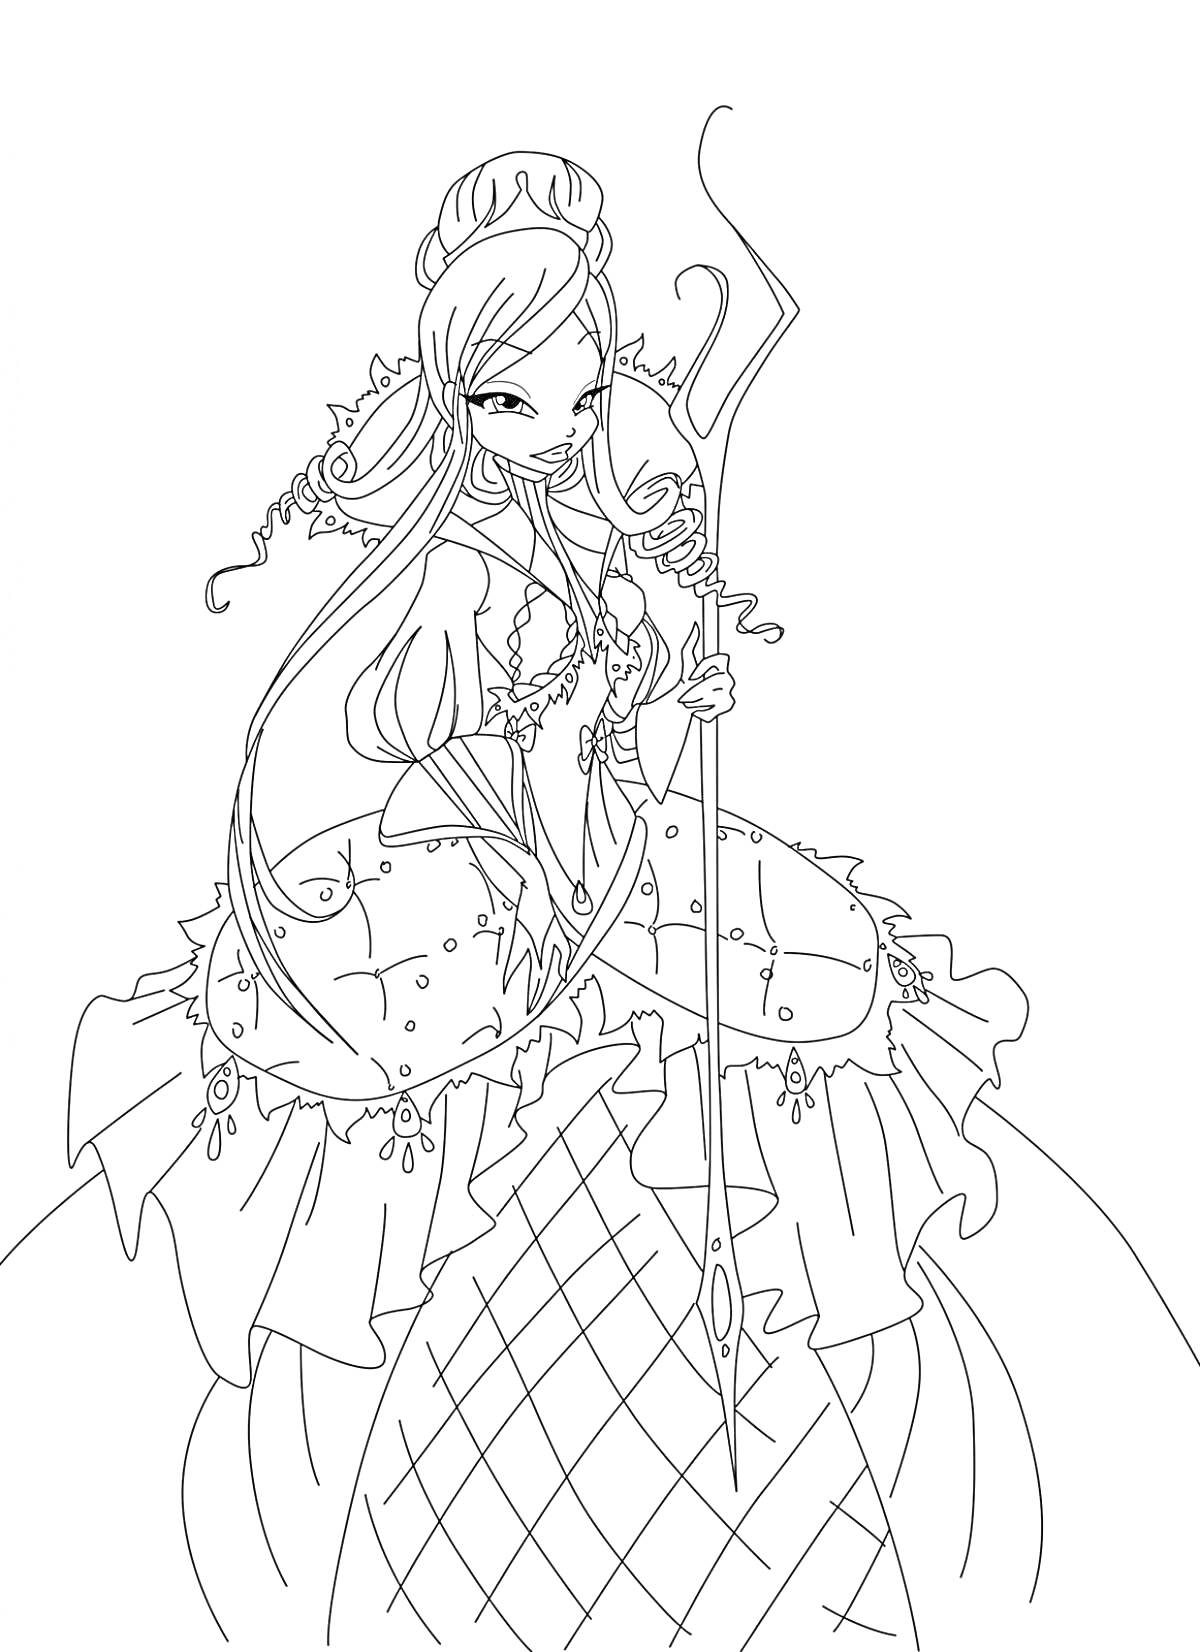 Раскраска Винкс принцесса с длинными волнистыми волосами в короне и длинном платье, держащая жезл